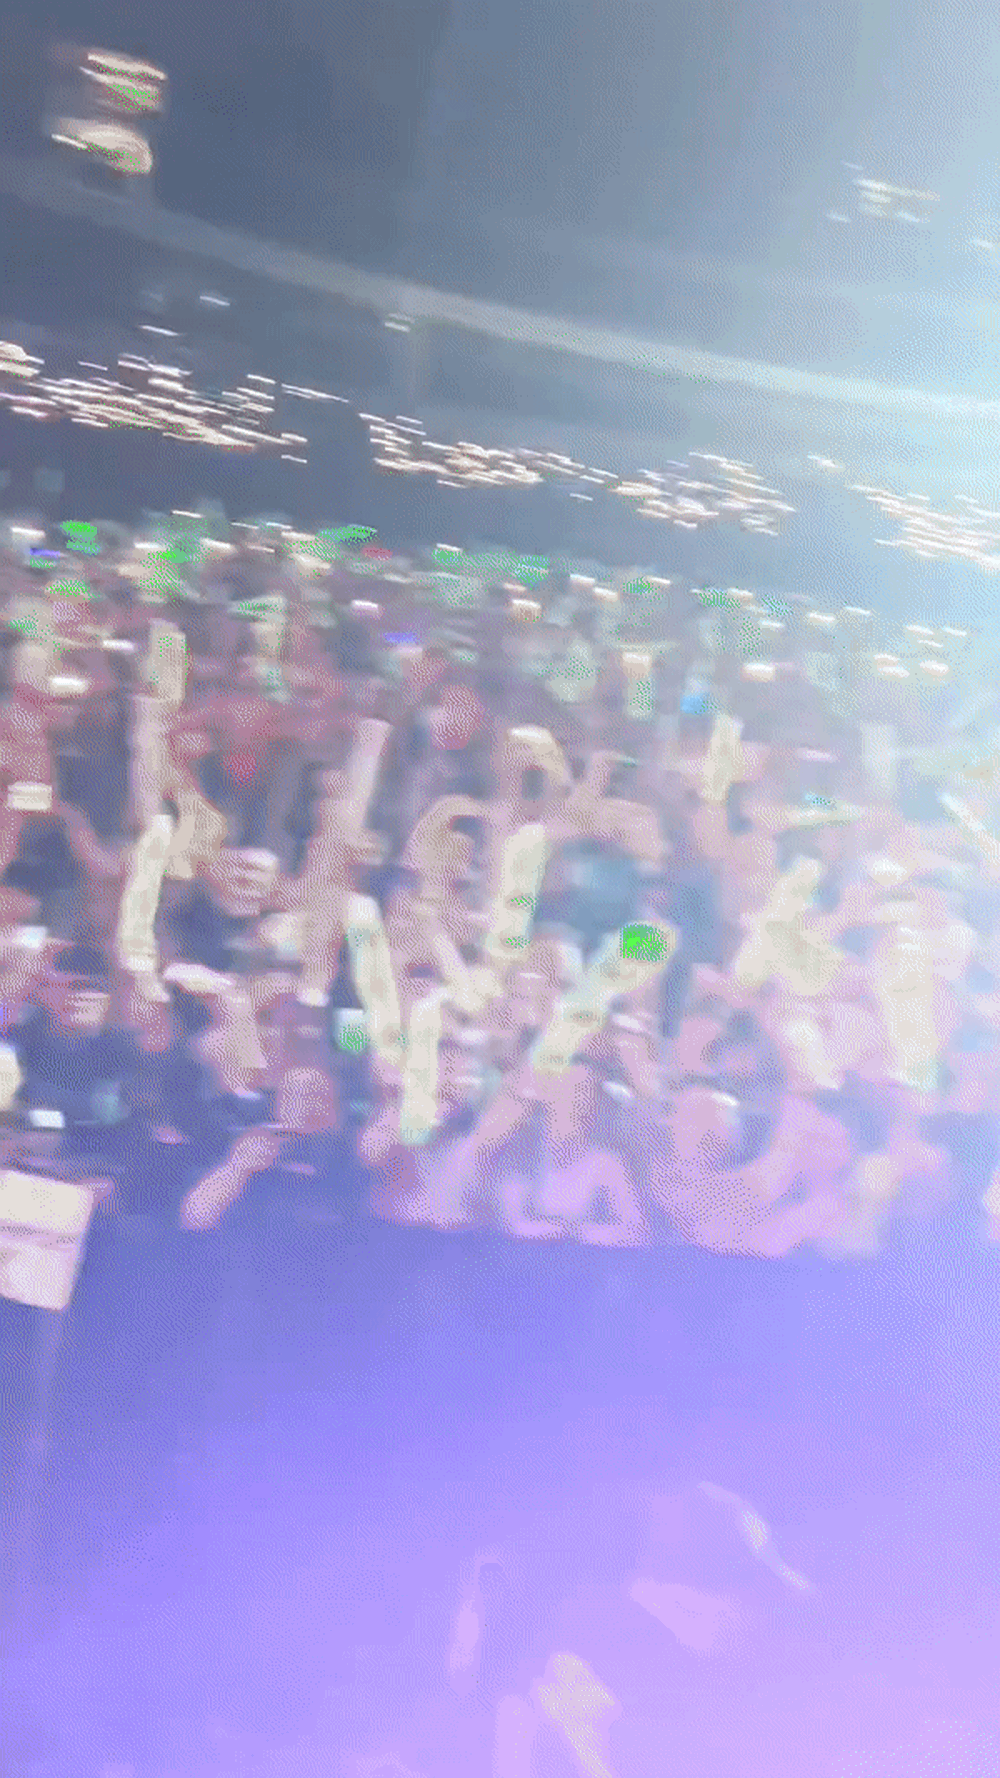 Westlife xả ảnh 2 đêm concert hoành tráng: Khoảnh khắc lá cờ Việt Nam - Ireland bên nhau khiến fan nức lòng! - Ảnh 4.